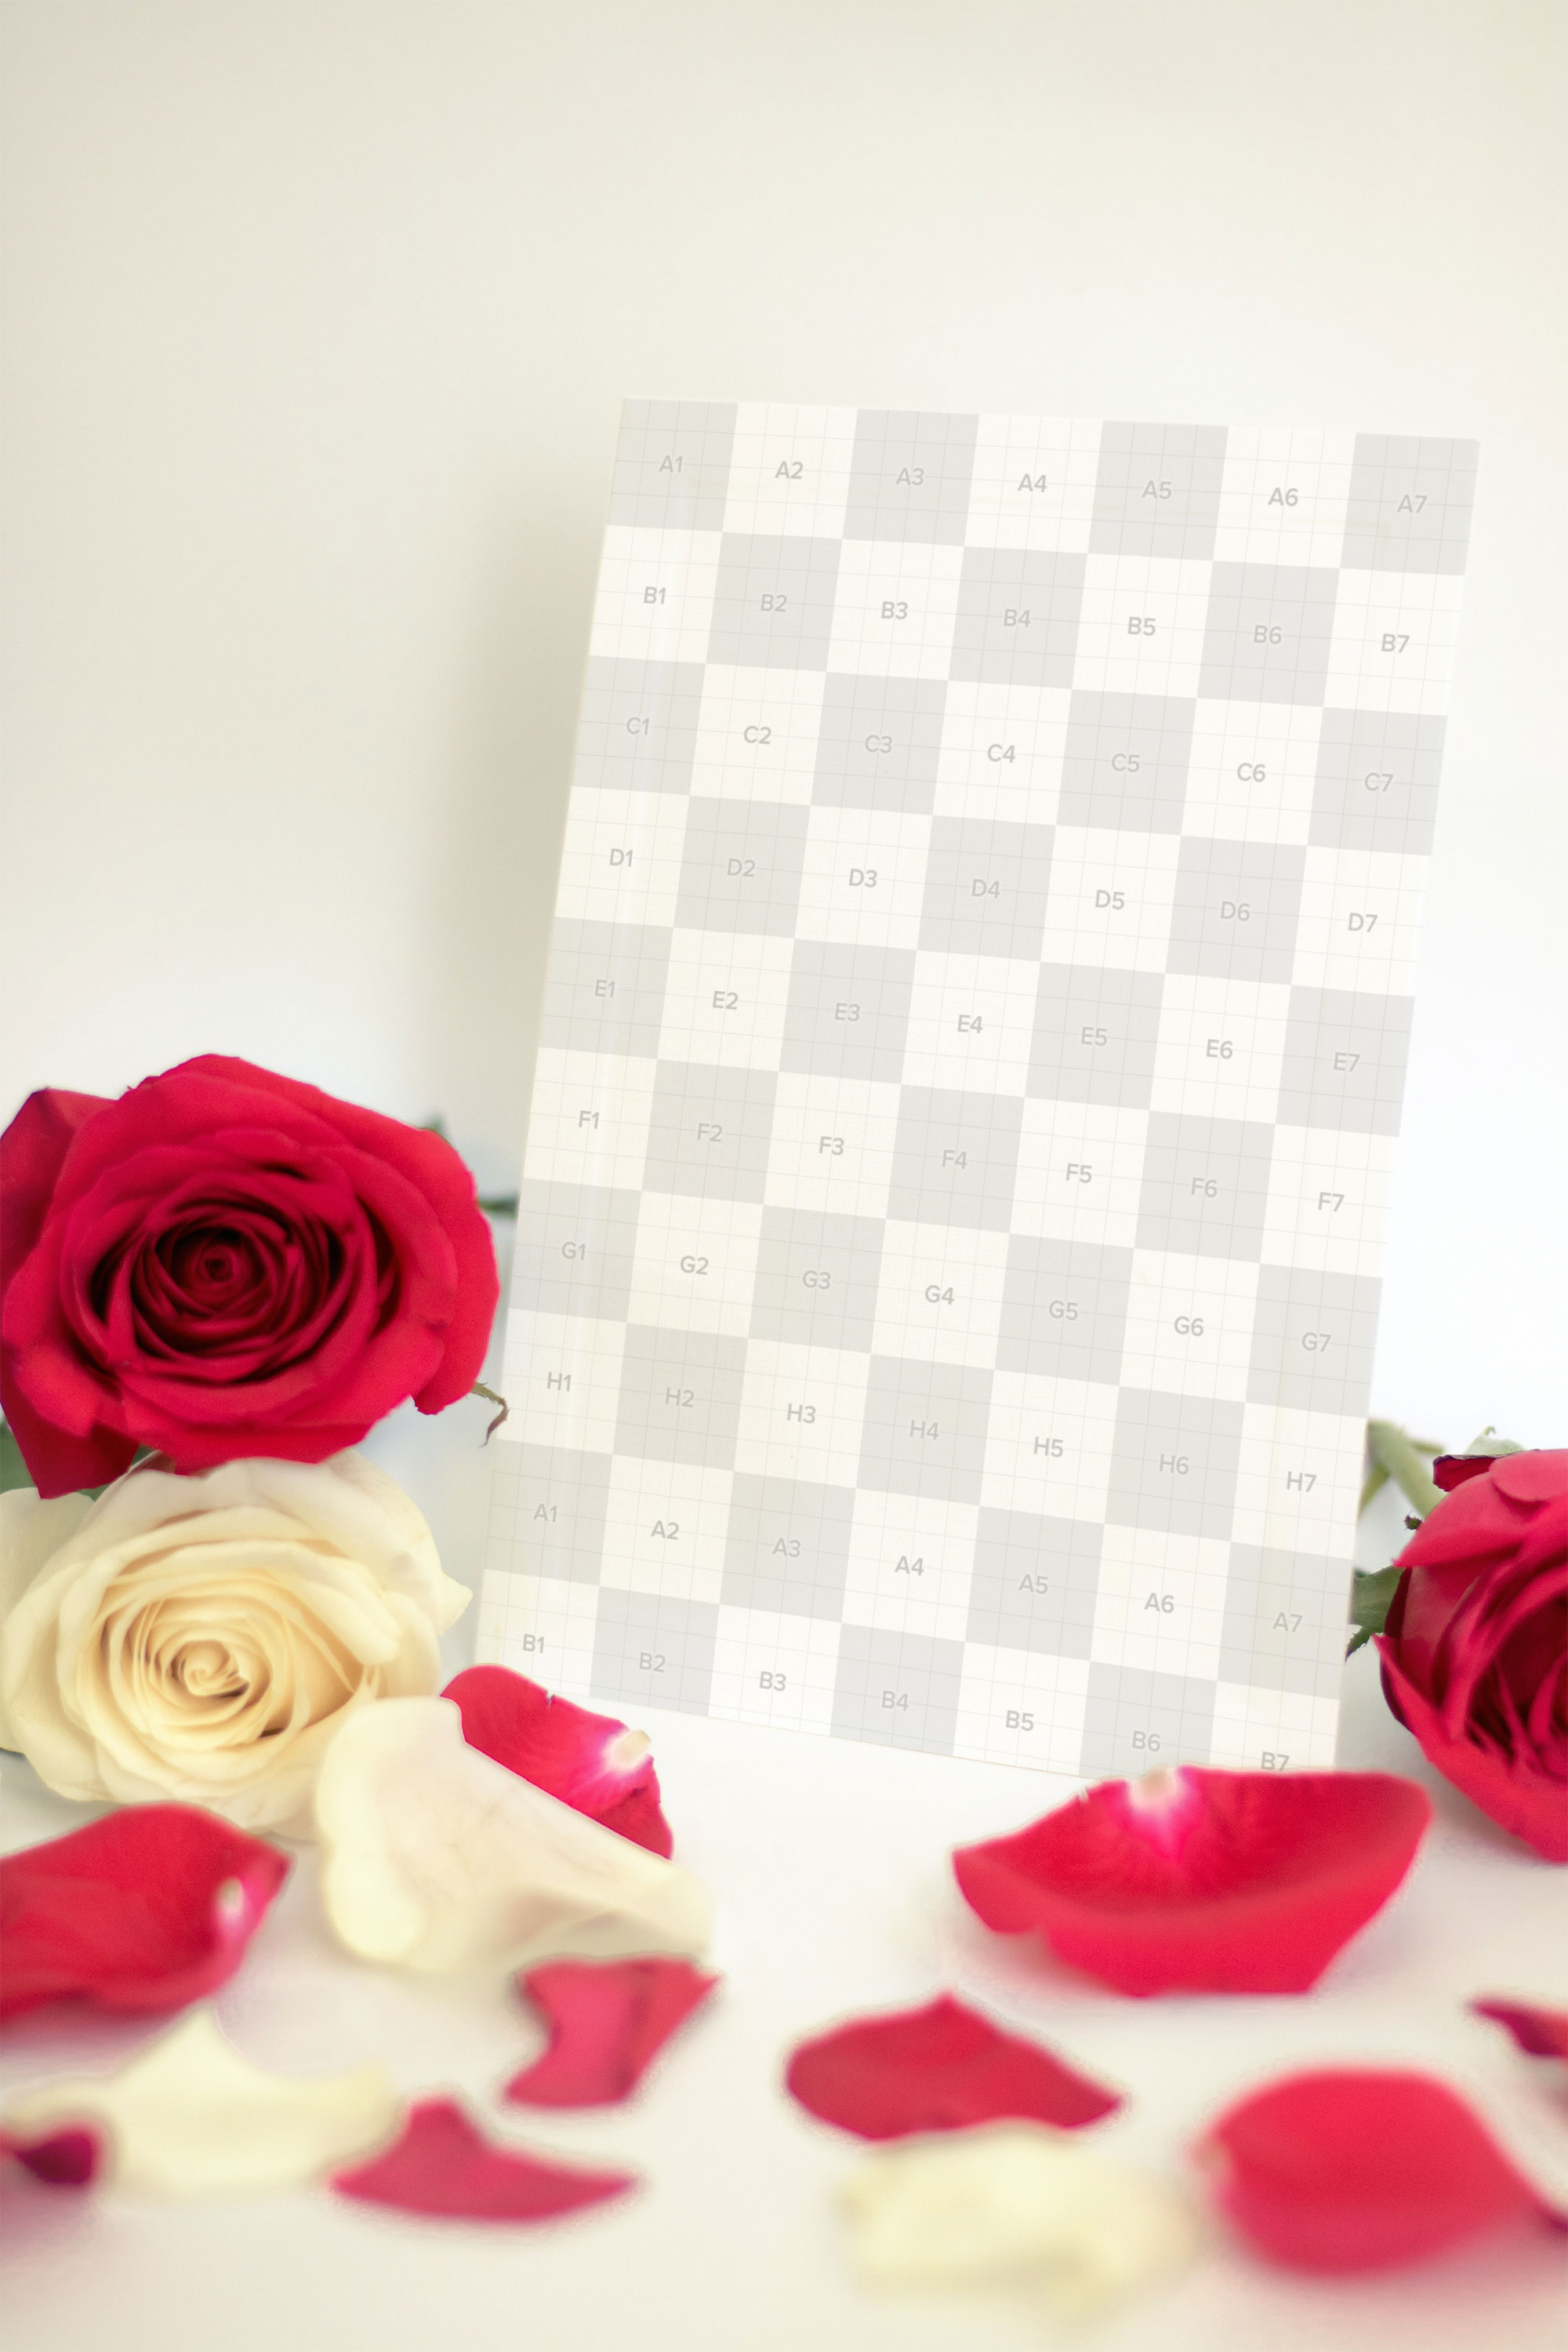 情人节贺卡设计样机模板 Valentine Card Mockup 06插图(2)